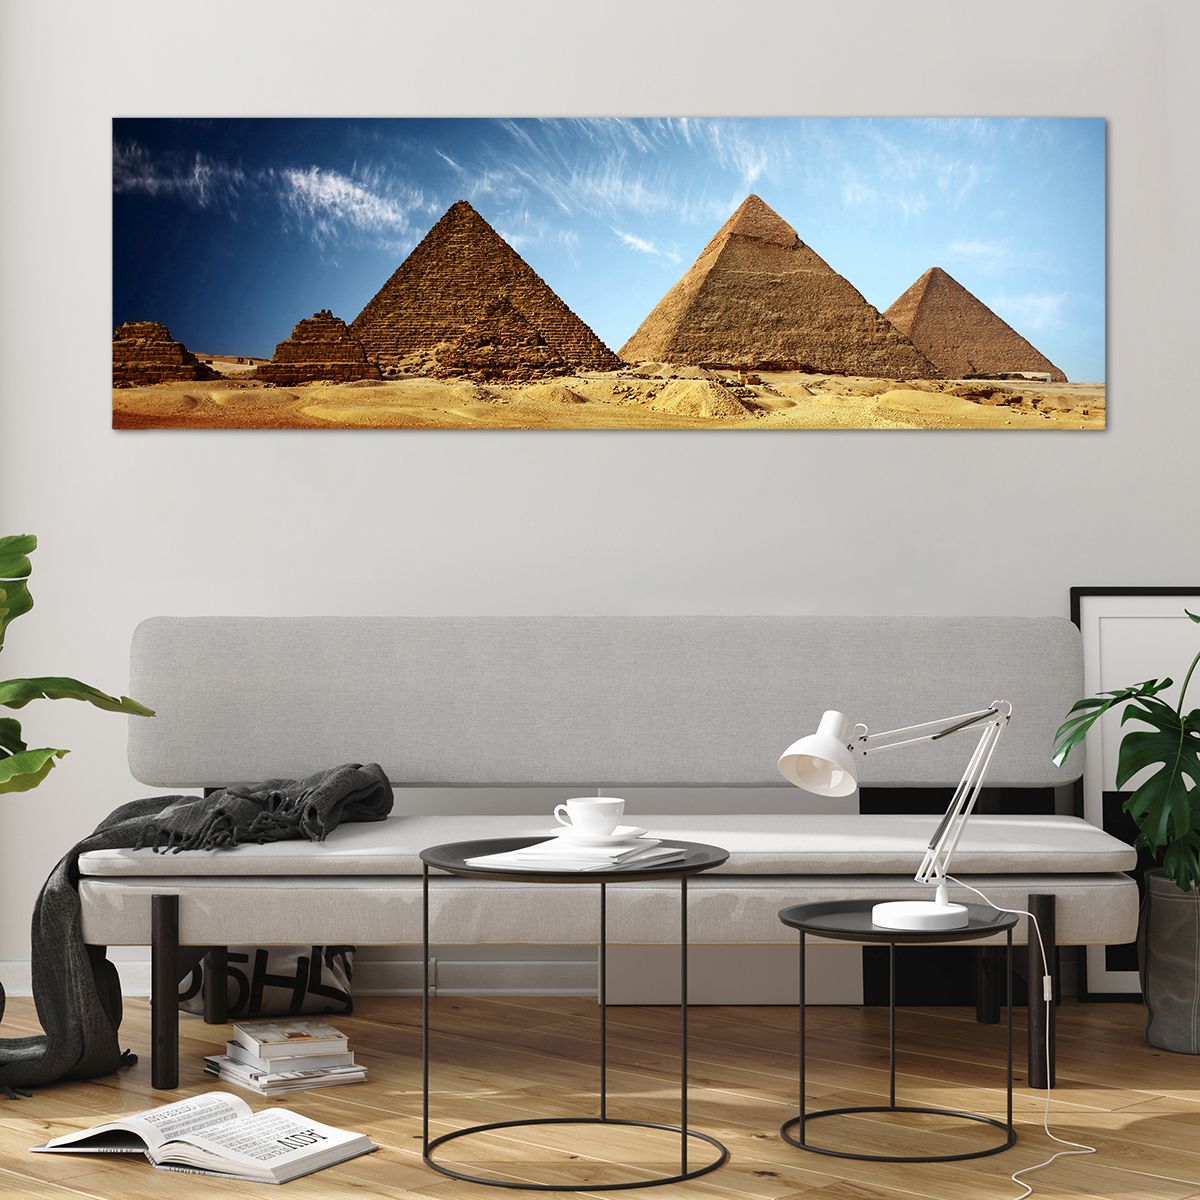 Quadro su vetro Piramidi, Quadro su vetro Architettura, Quadro su vetro Paesaggio, Quadro su vetro Egitto, Quadro su vetro Deserto